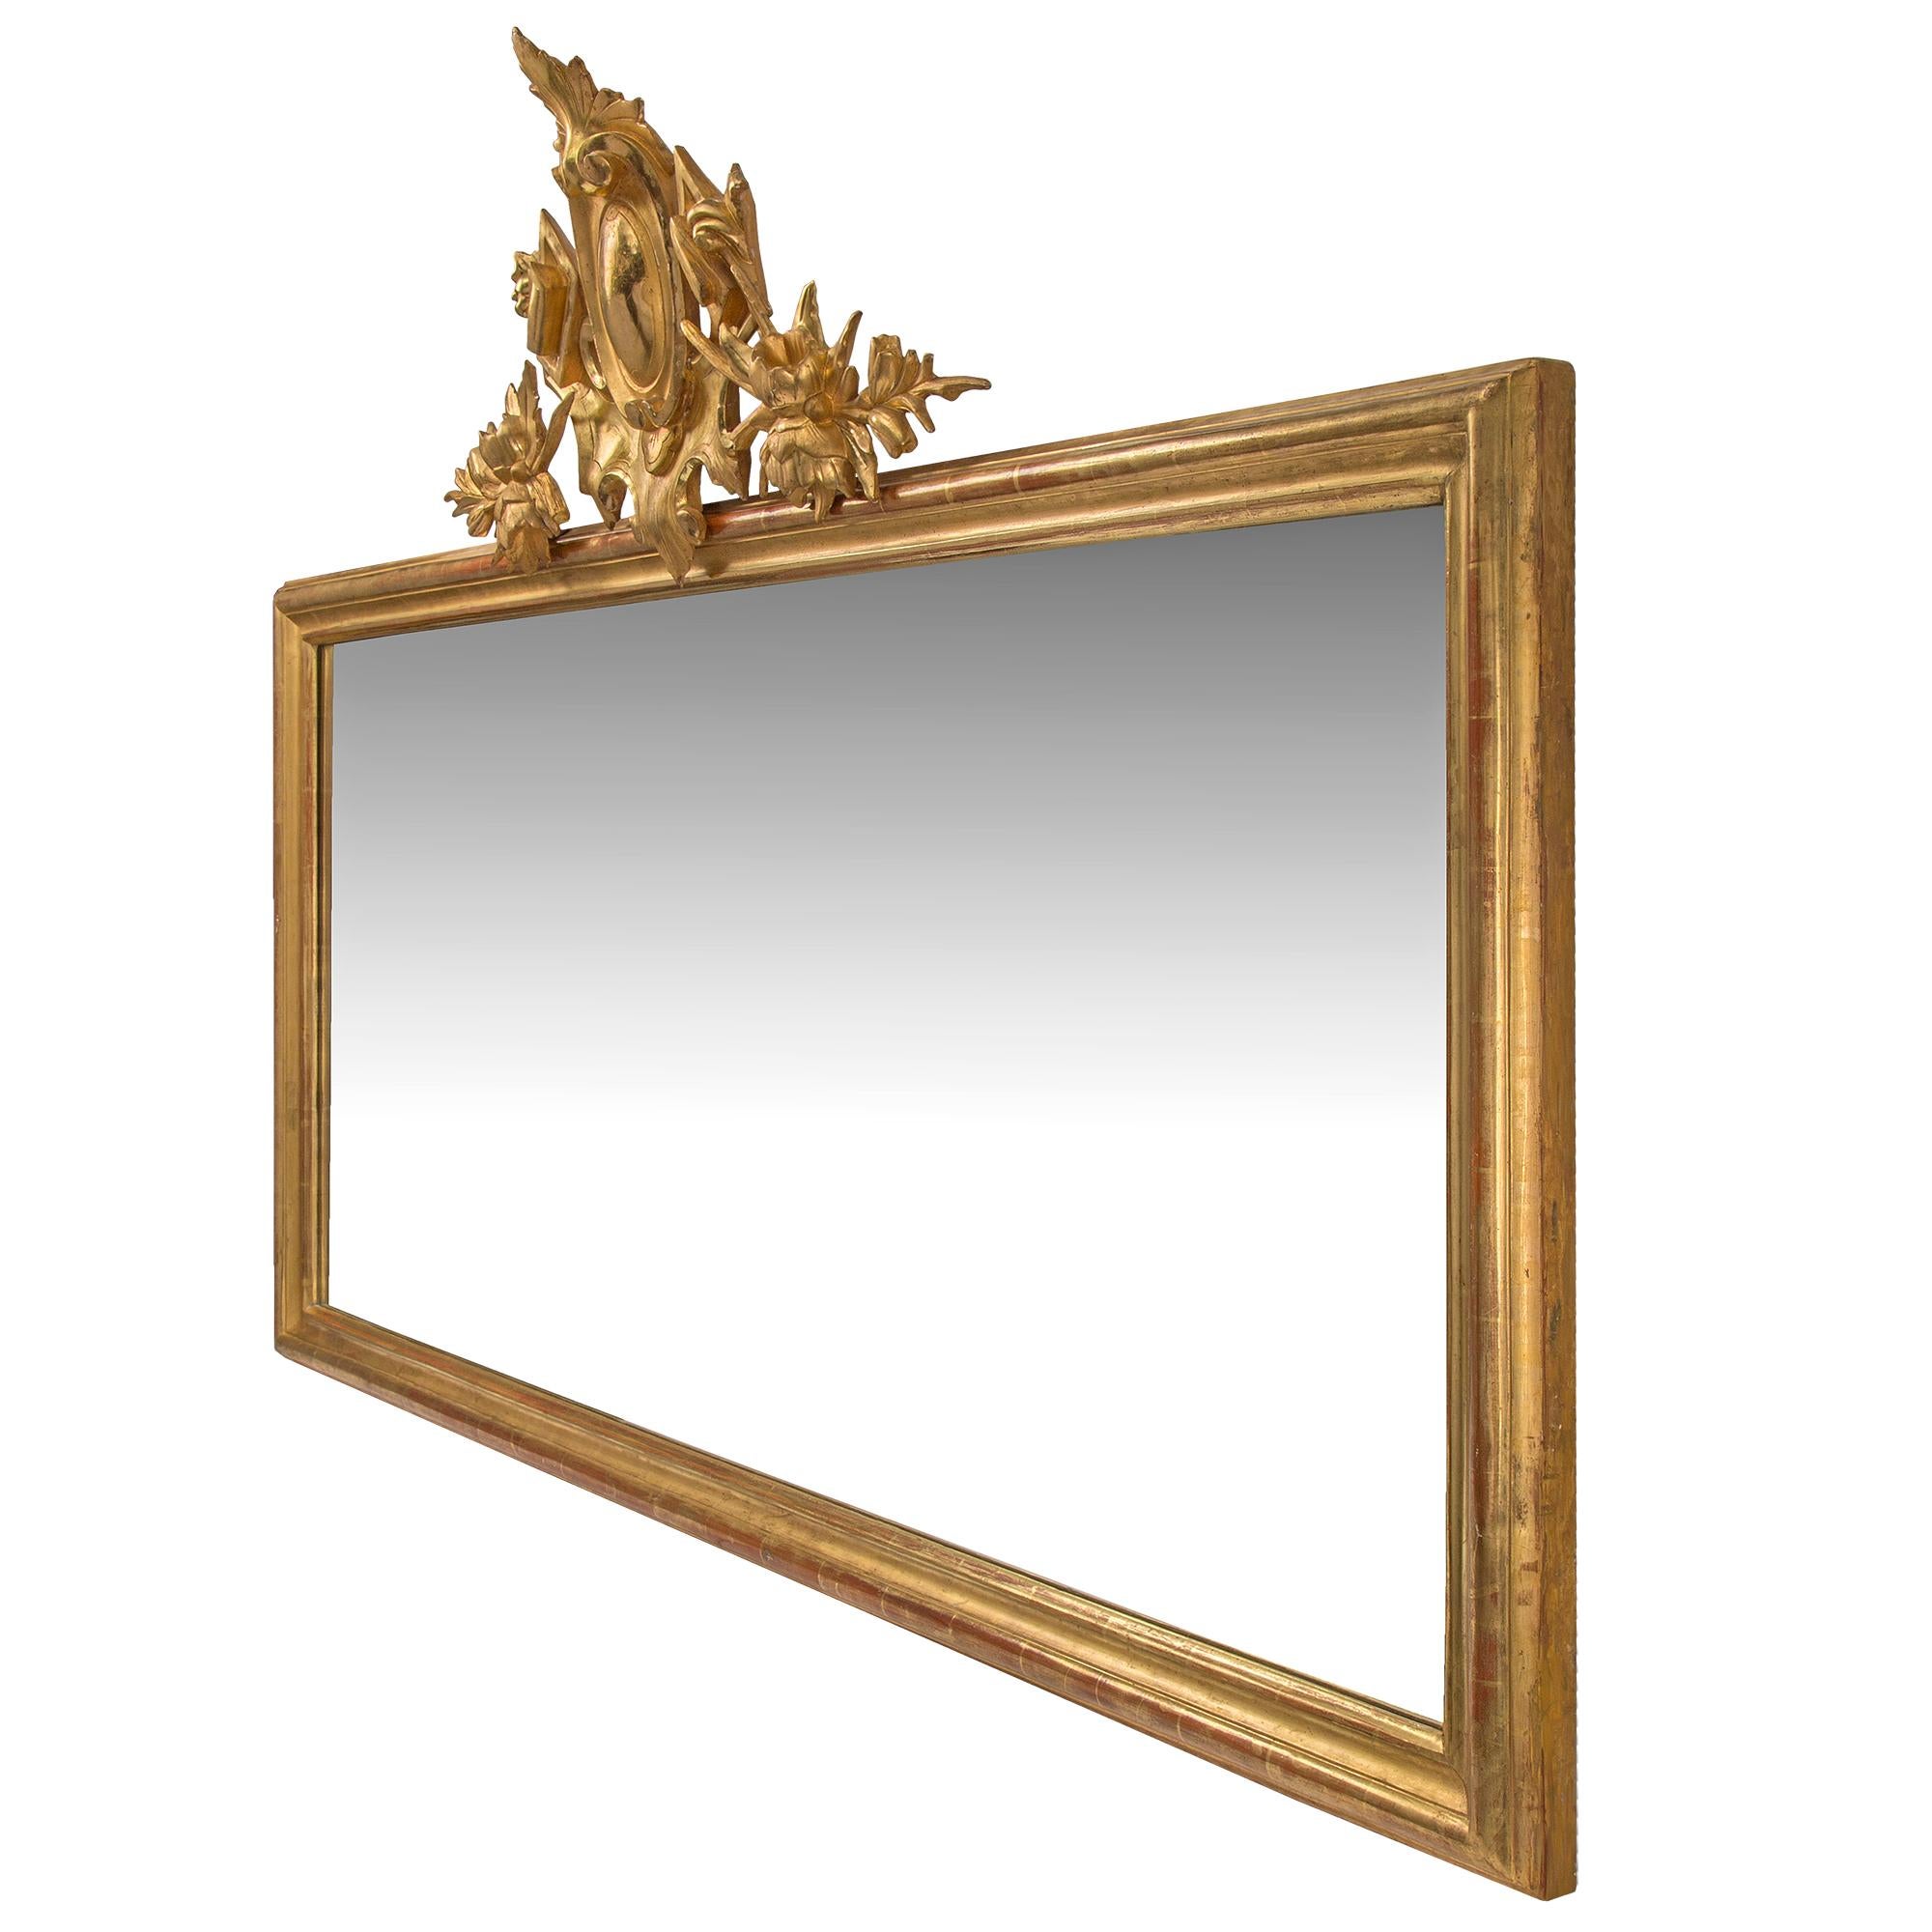 Ein Paar elegante italienische horizontale Vergoldungsspiegel des 19. Jahrhunderts. Jeder Spiegel mit der originalen Vergoldung hat einen fein geformten Rahmen, der die originale Spiegelplatte einfasst. Auf der Oberseite befindet sich eine